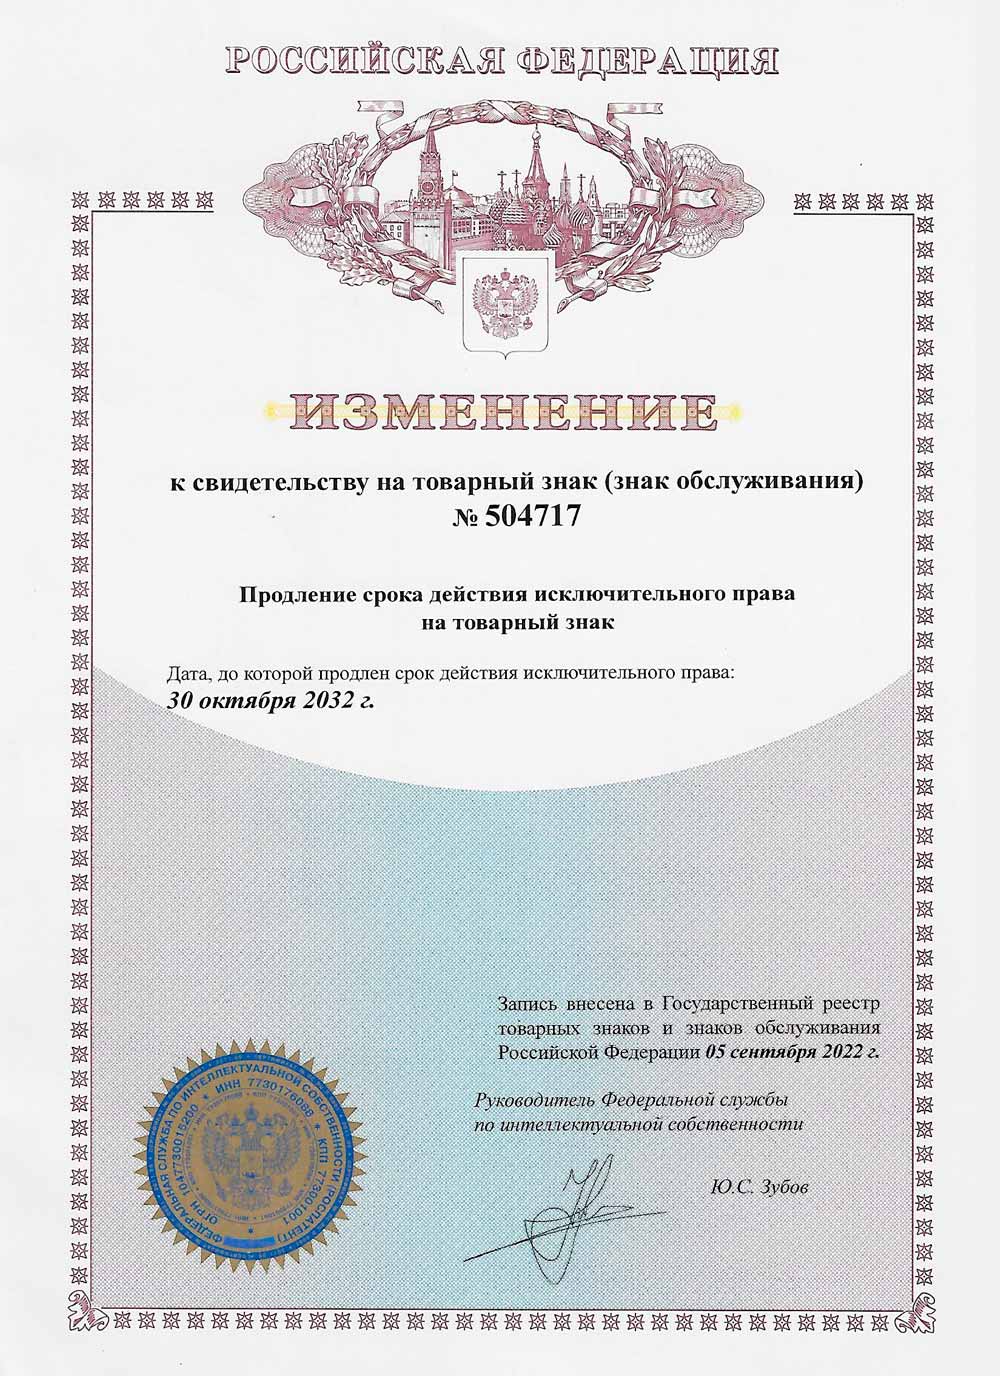 Продление срока действия сертификата на товарный знак ВОЛИН